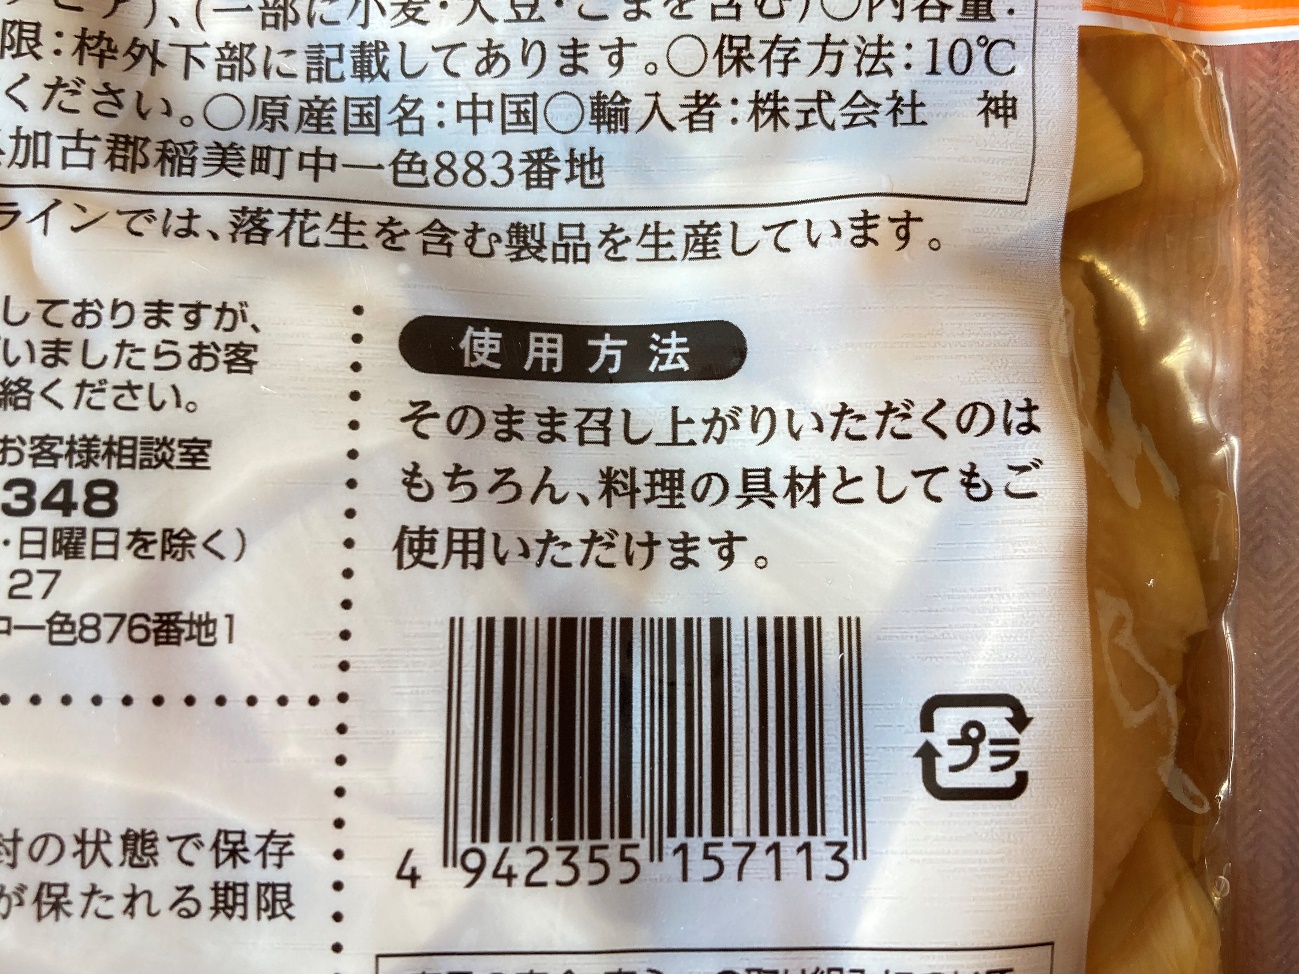 業務スーパーの味付けメンマのパッケージに記載されている使用方法